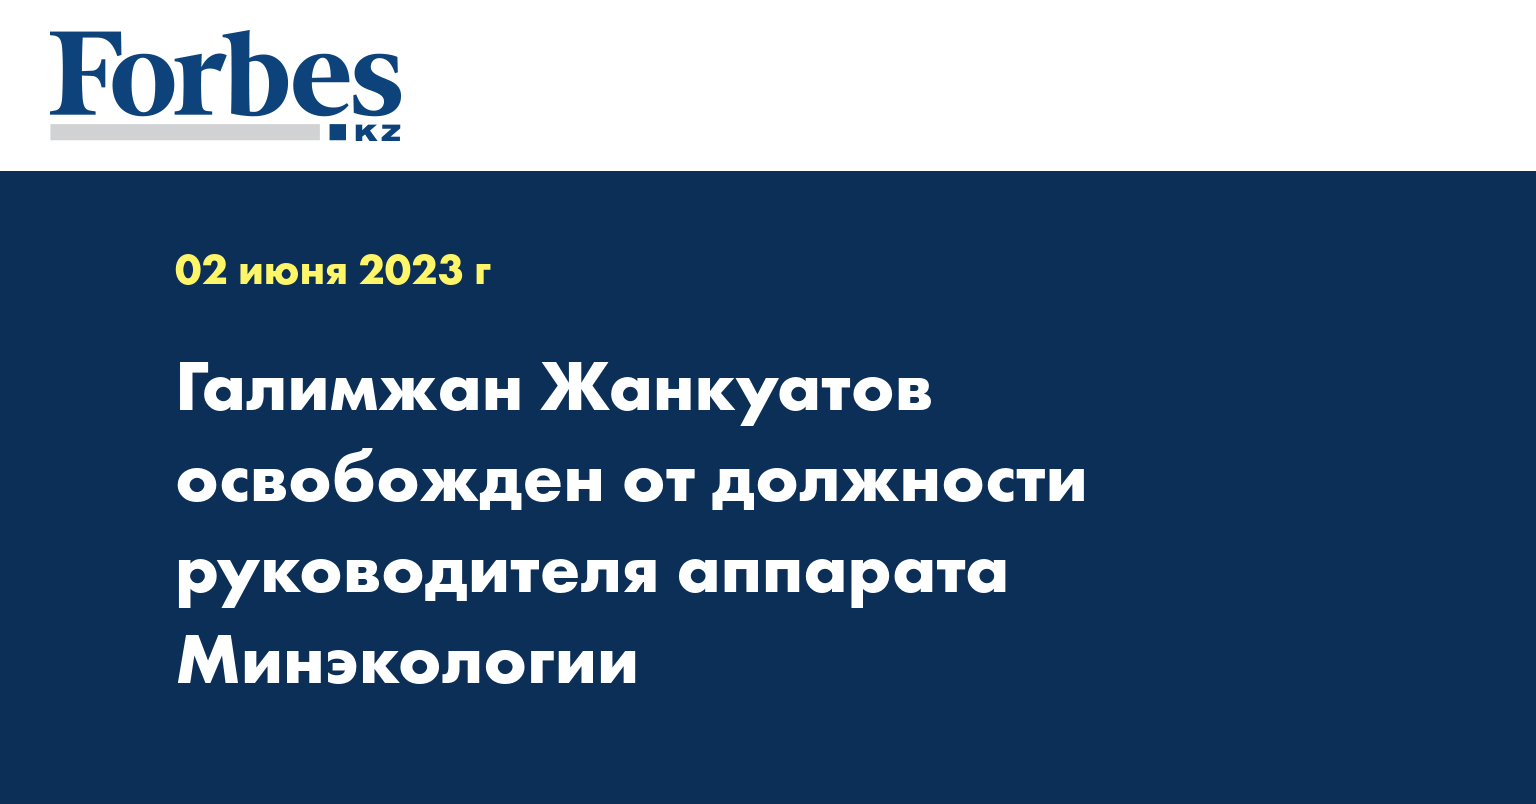 Галимжан Жанкуатов освобожден от должности руководителя аппарата Минэкологии